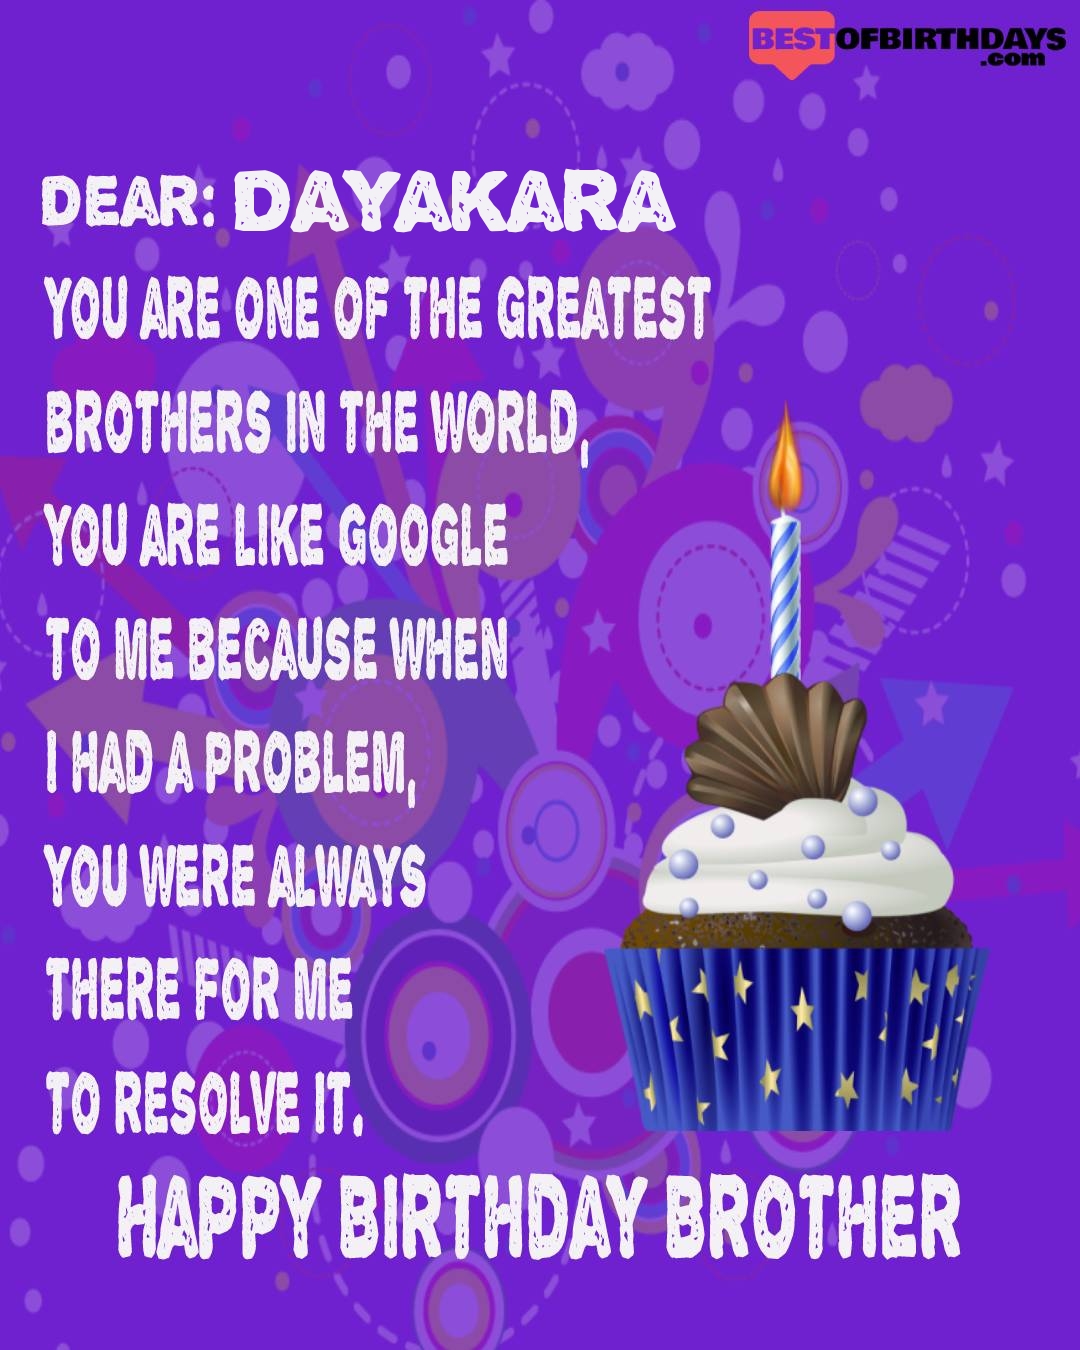 Happy birthday dayakara bhai brother bro